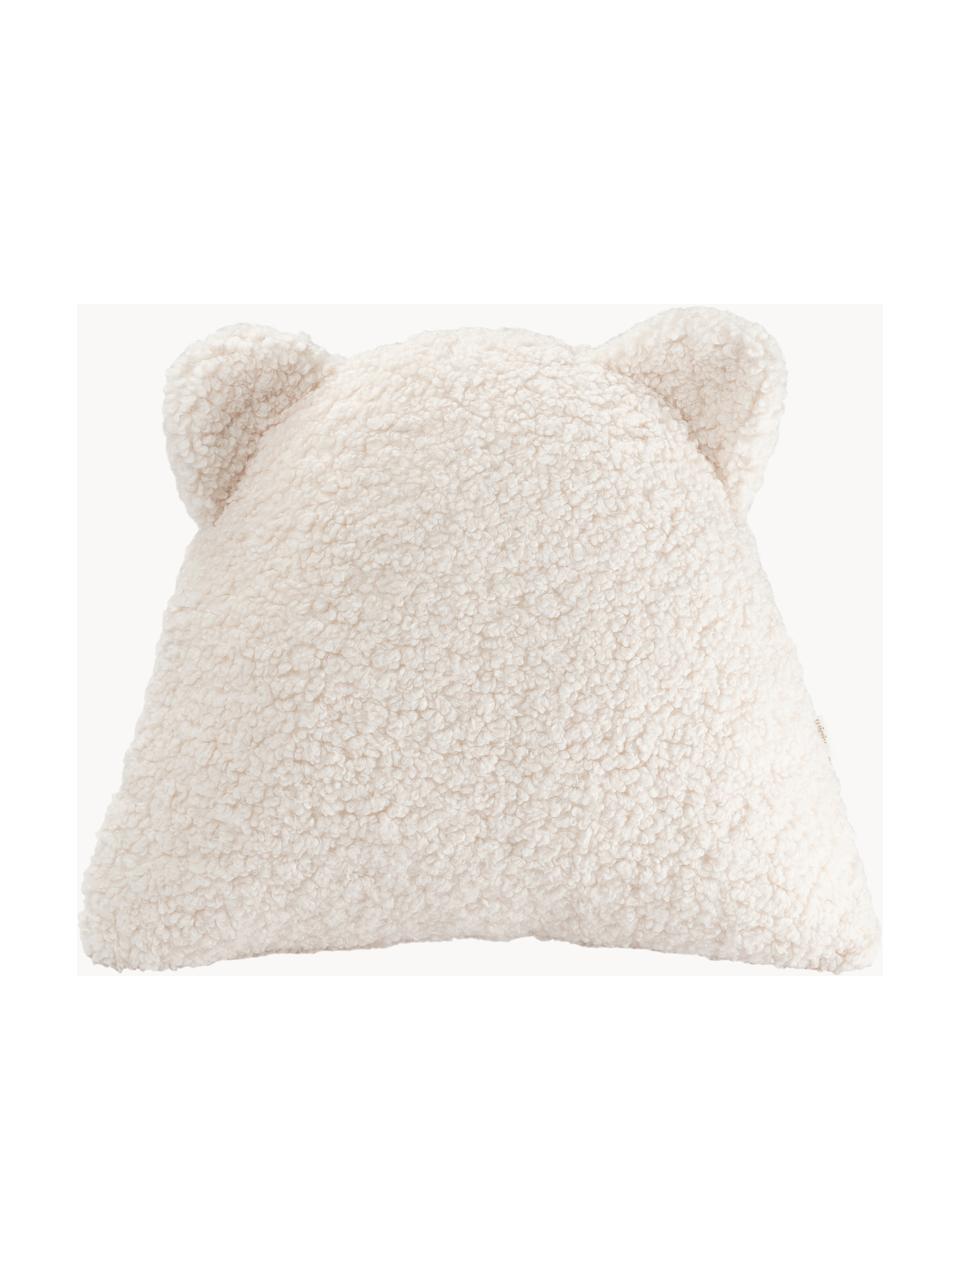 Poduszka do przytulania Teddy Bear, Tapicerka: Teddy (100% poliester), Złamana biel, S 40 x D 37 cm